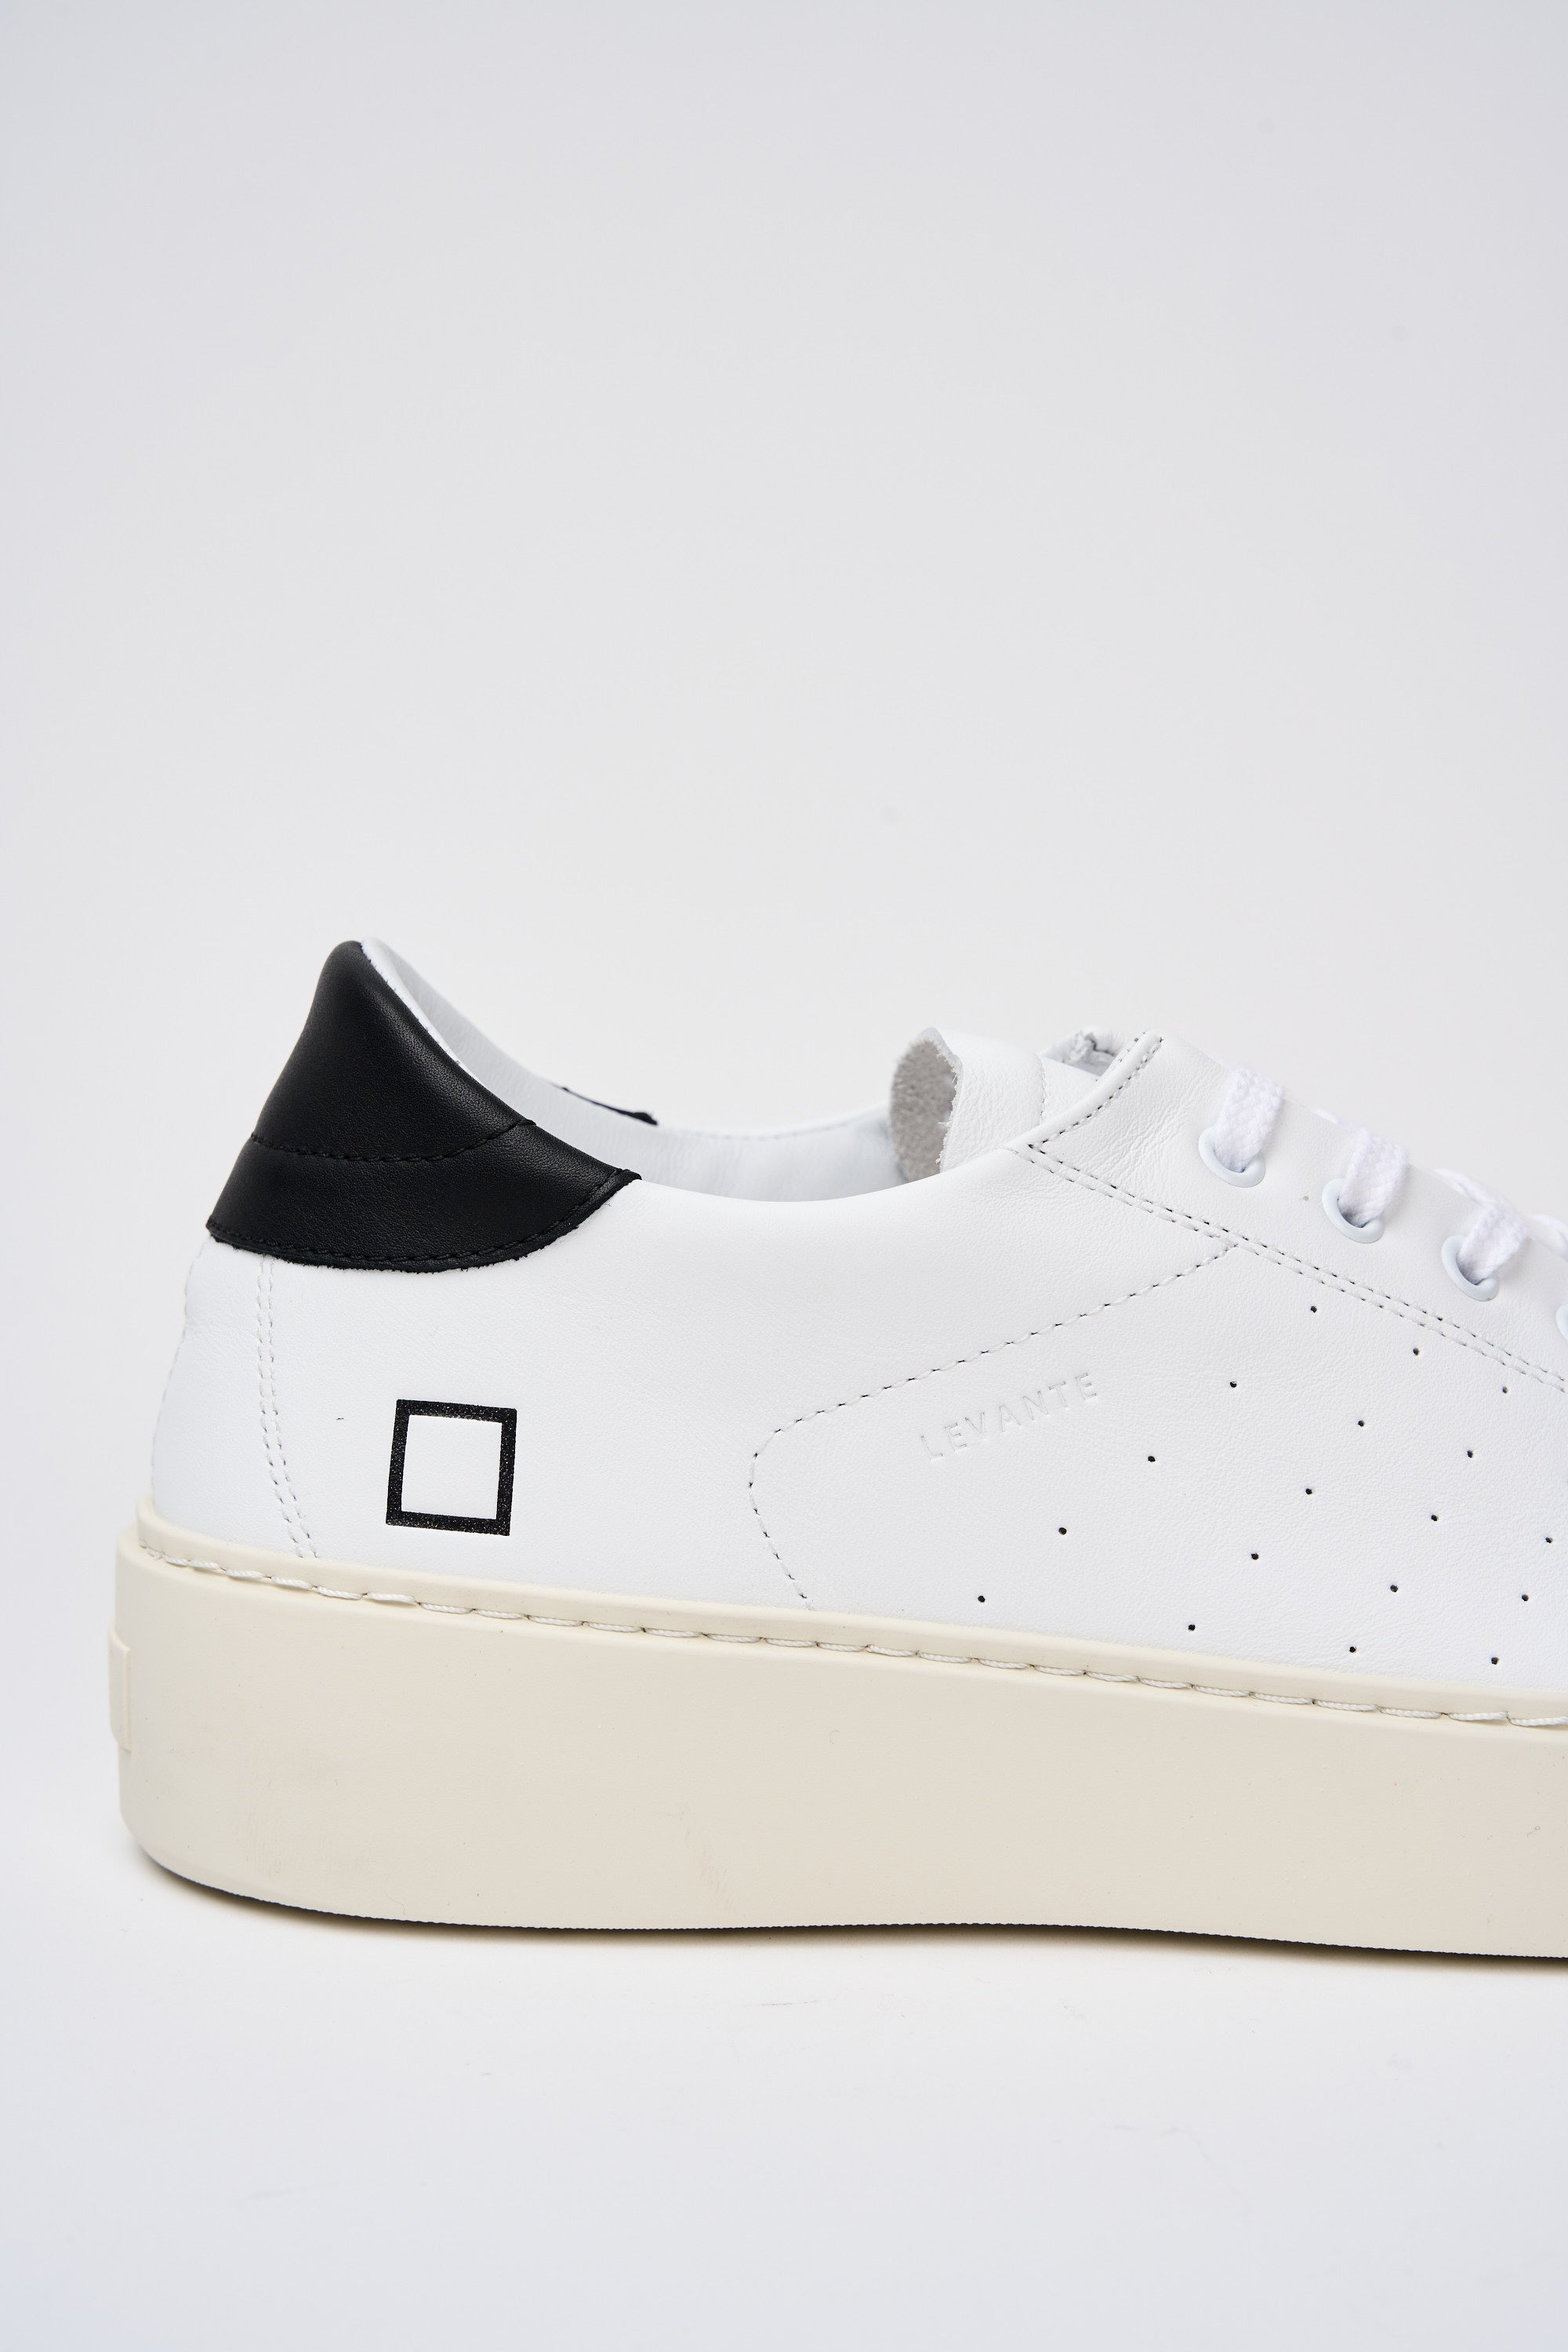 D.A.T.E. Sneaker Levante Leather White/Black-4